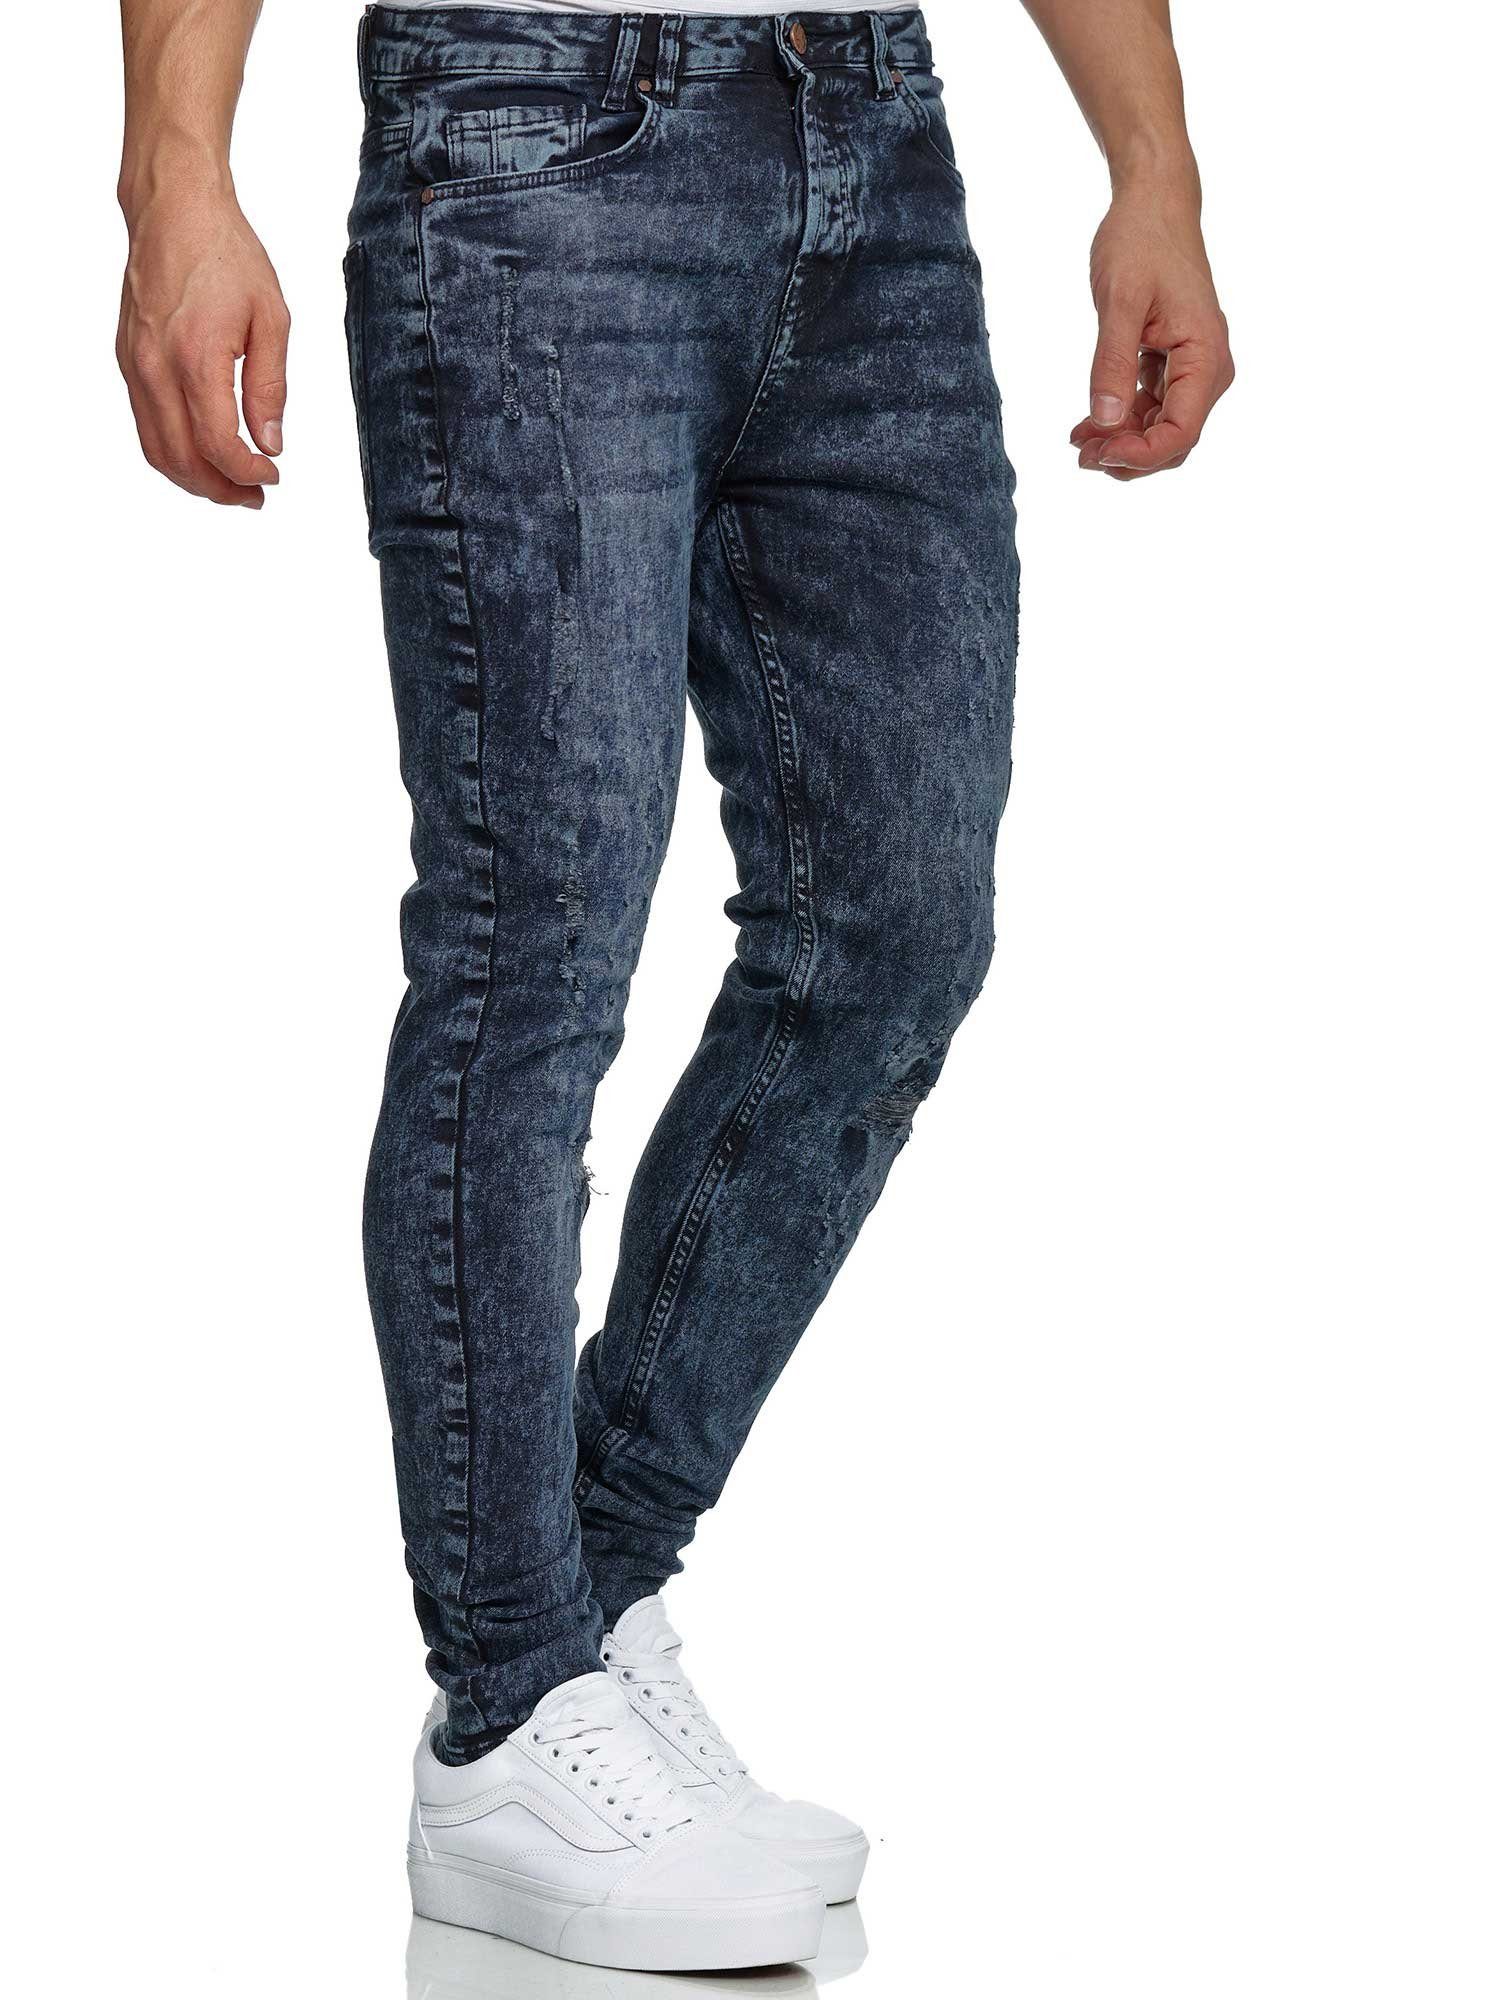 Tazzio Skinny-fit-Jeans 17516 im Destroyed-Look blau | Stretchjeans